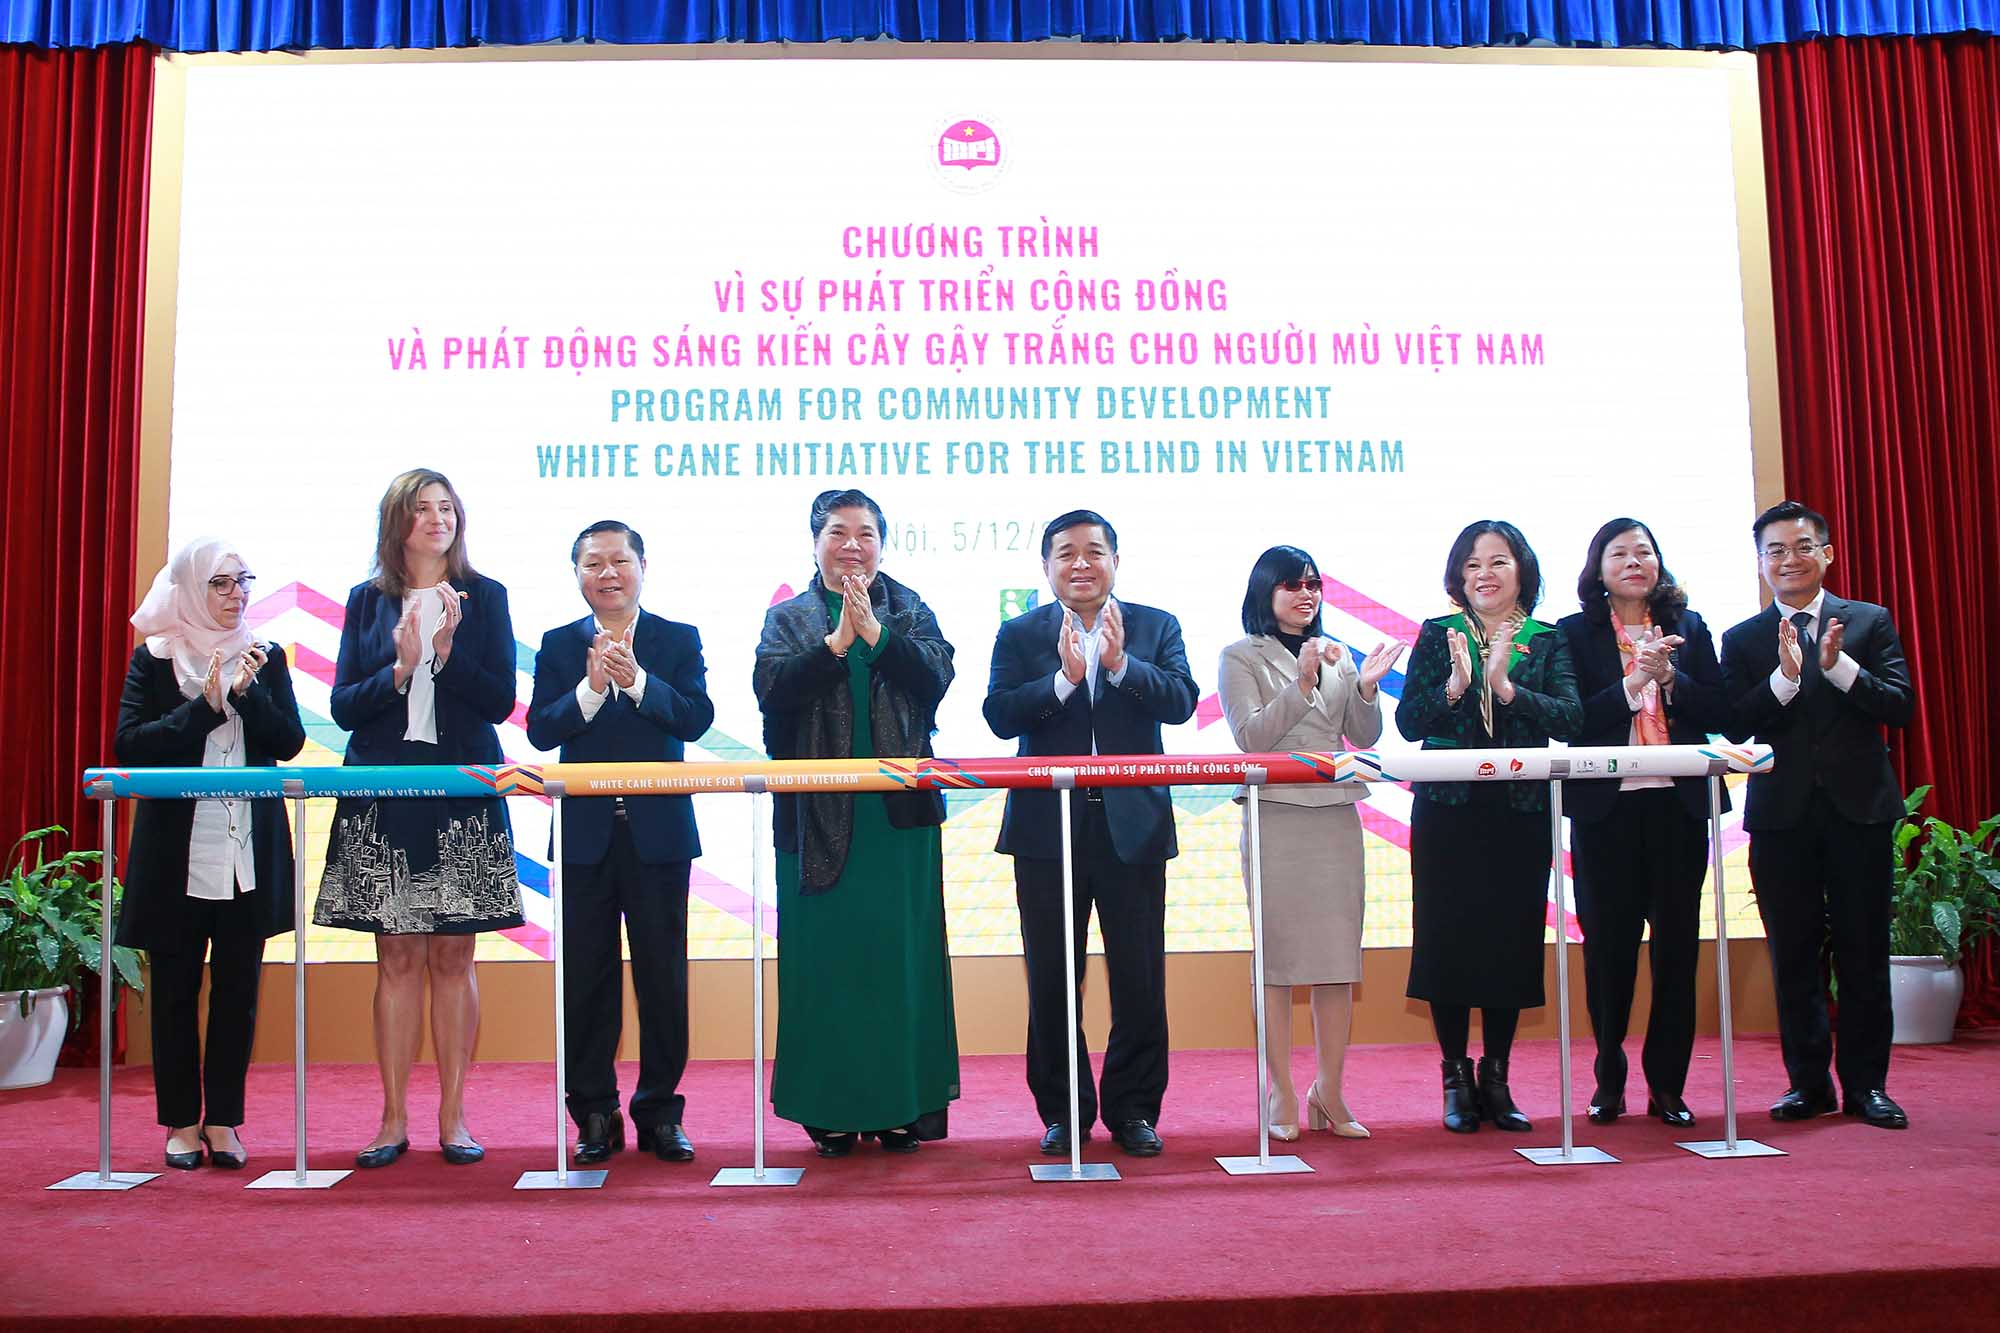 Mục tiêu của sáng kiến là hỗ trợ 1 triệu cây gậy trắng cho người mù, khiếm thị tại Việt Nam